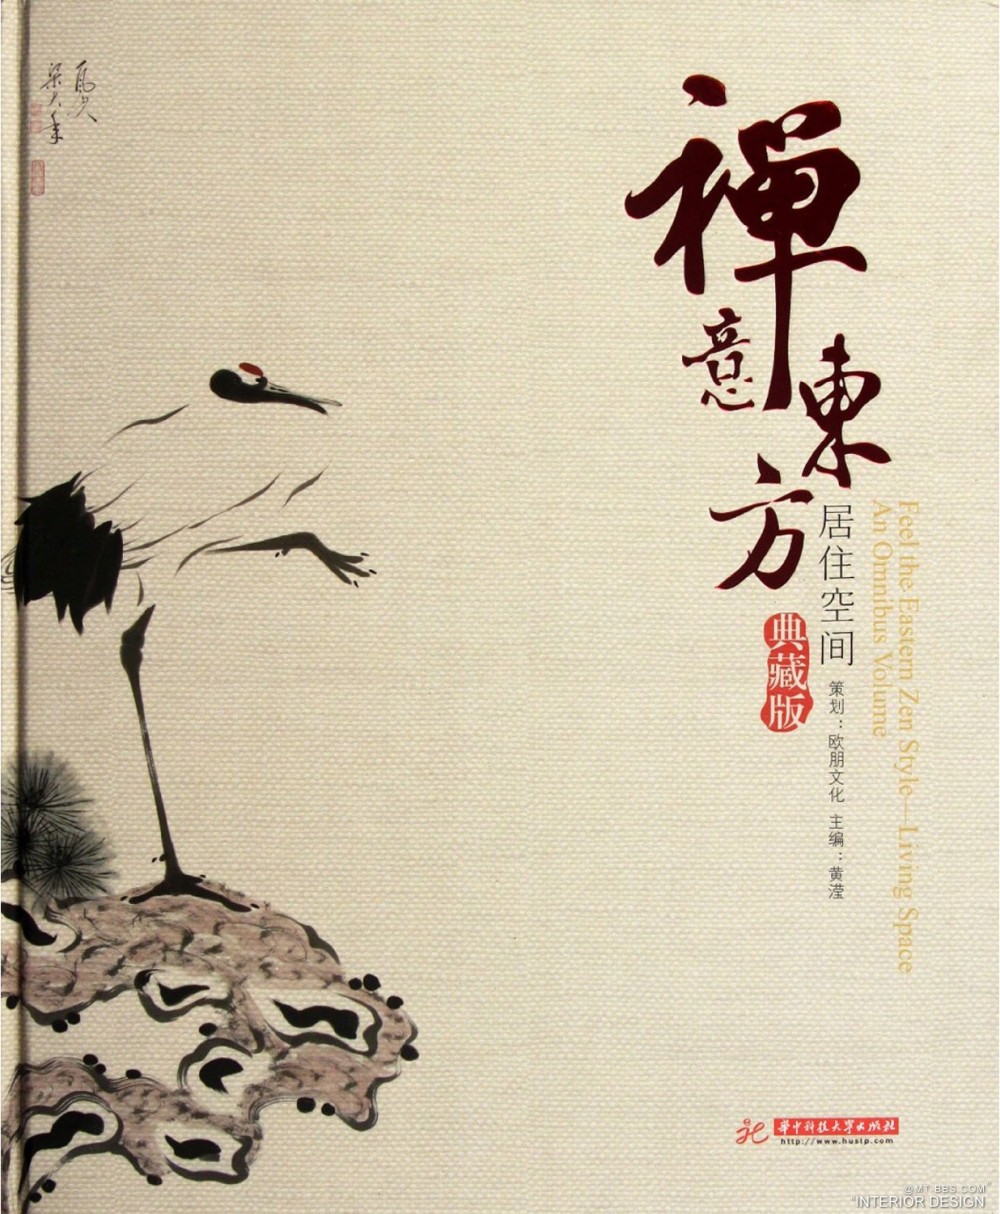 07.禅意东方-居住空间 典藏版(2012年5月).jpg